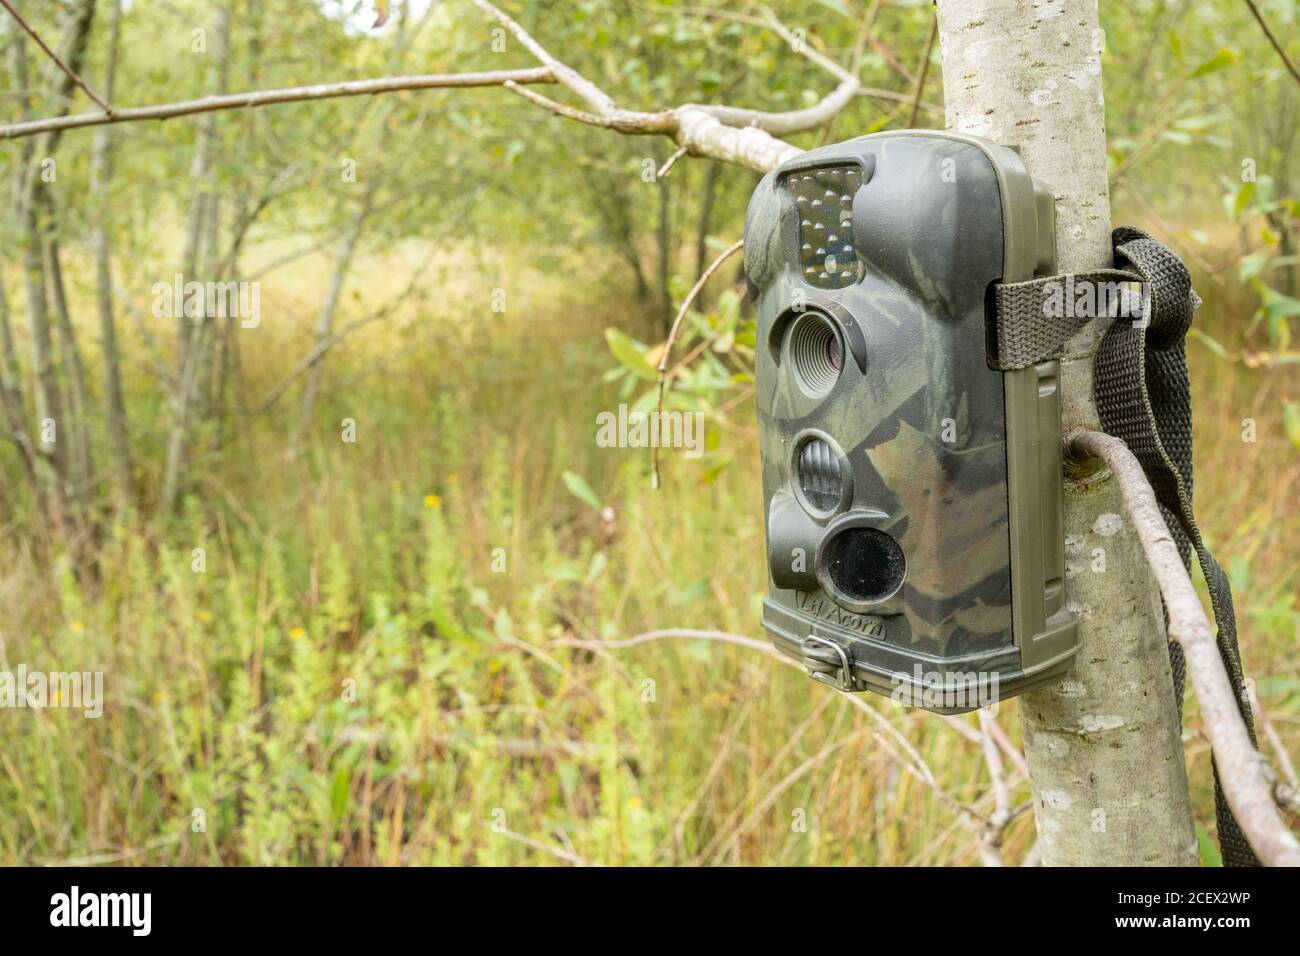 Caméra de randonnée ou piège de caméra installé dans un arbre pour surveiller et photographier la faune d'une zone humide, au Royaume-Uni Banque D'Images